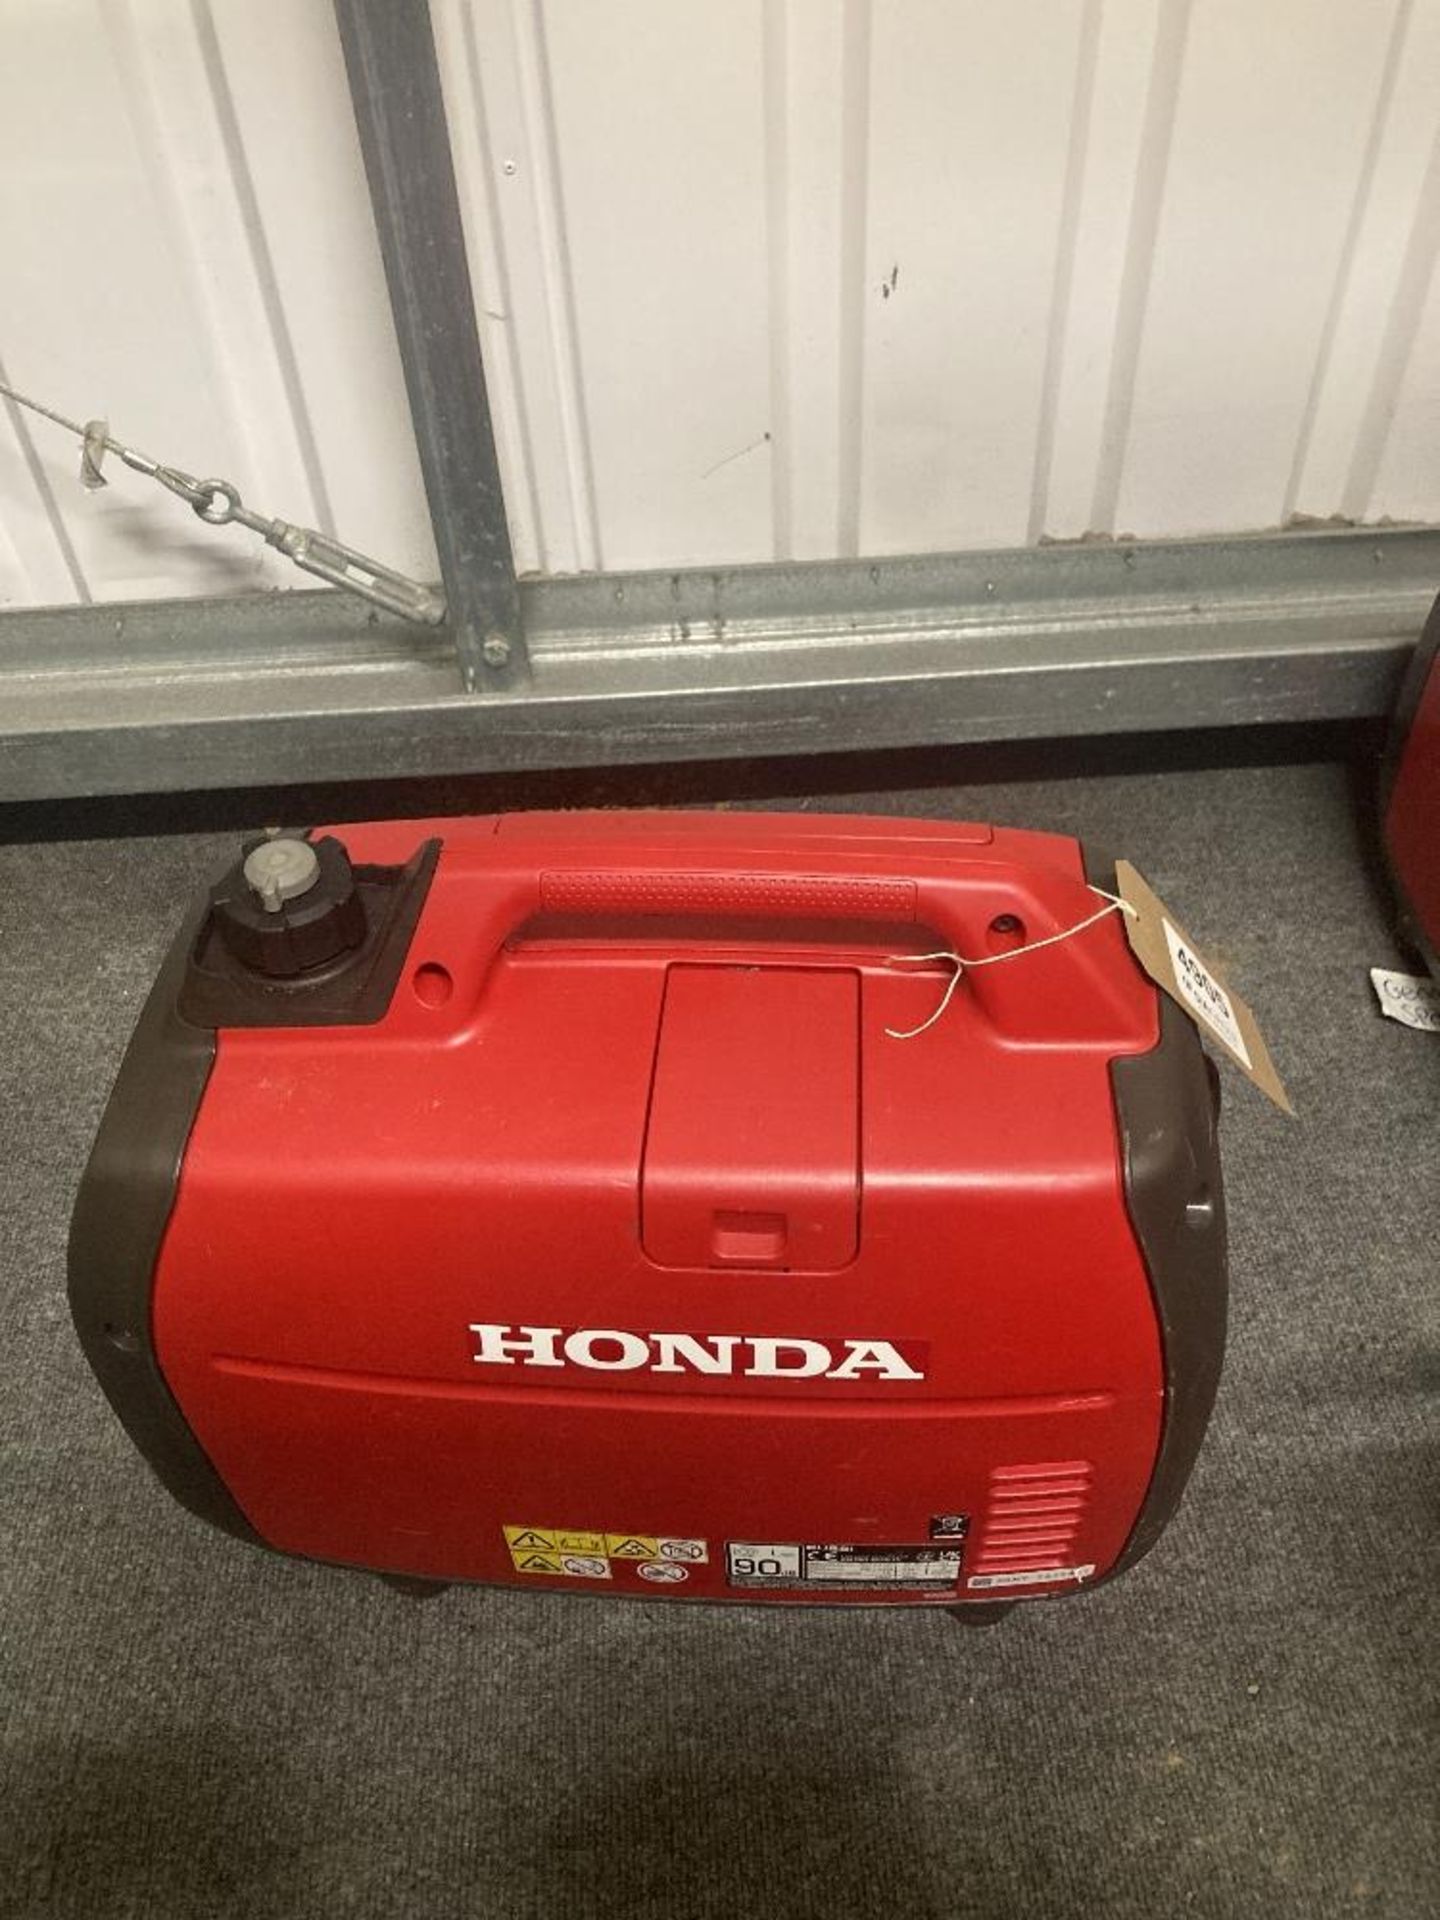 Honda EU22I Portable Generator - Image 3 of 4